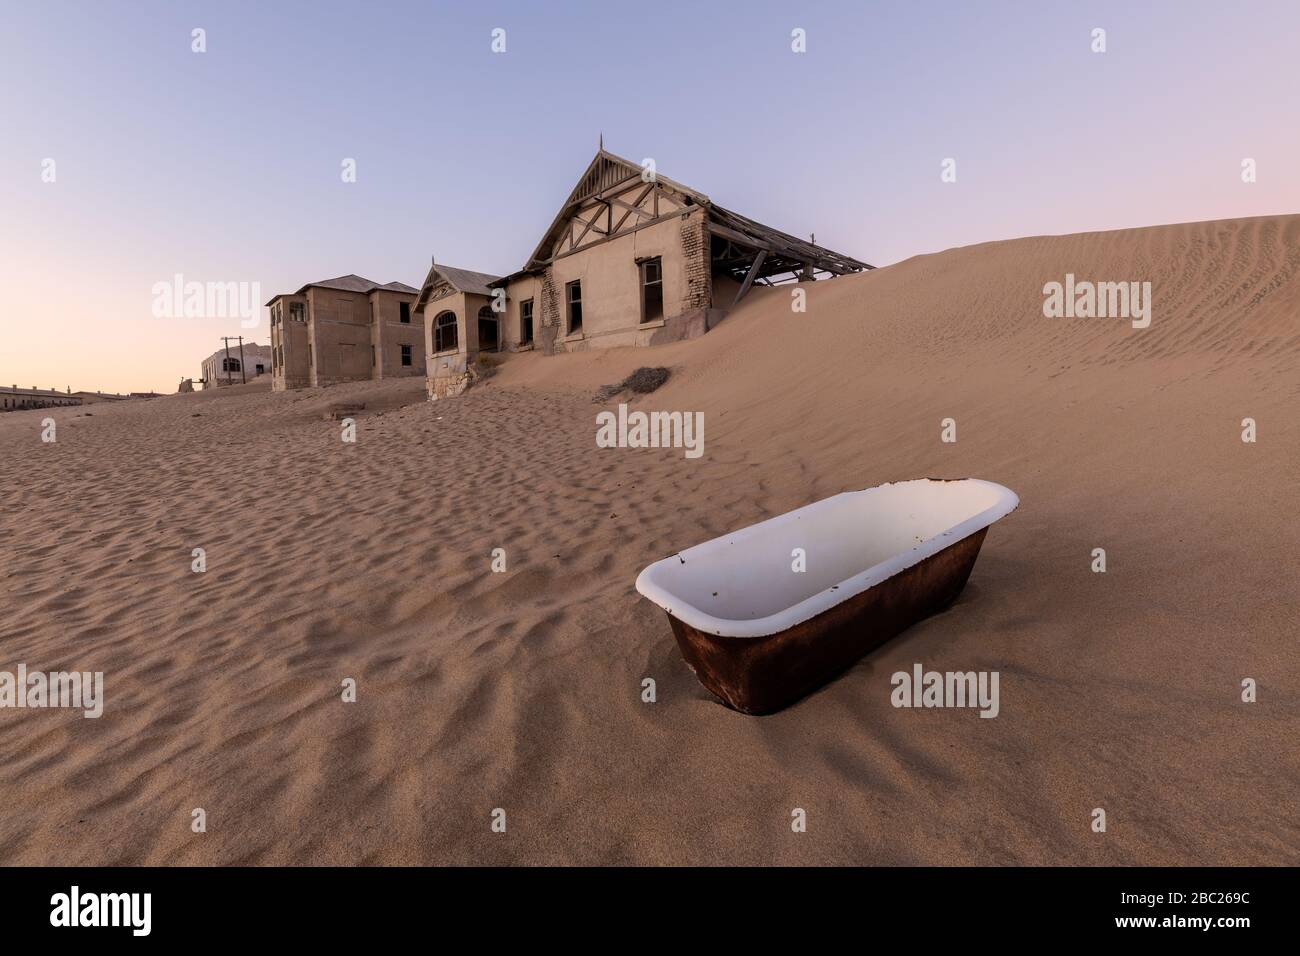 Una fotografía en el exterior con una casa abandonada en el horizonte y una bañera blanca en la arena ondulada del desierto en primer plano, tomada en el fantasma Foto de stock